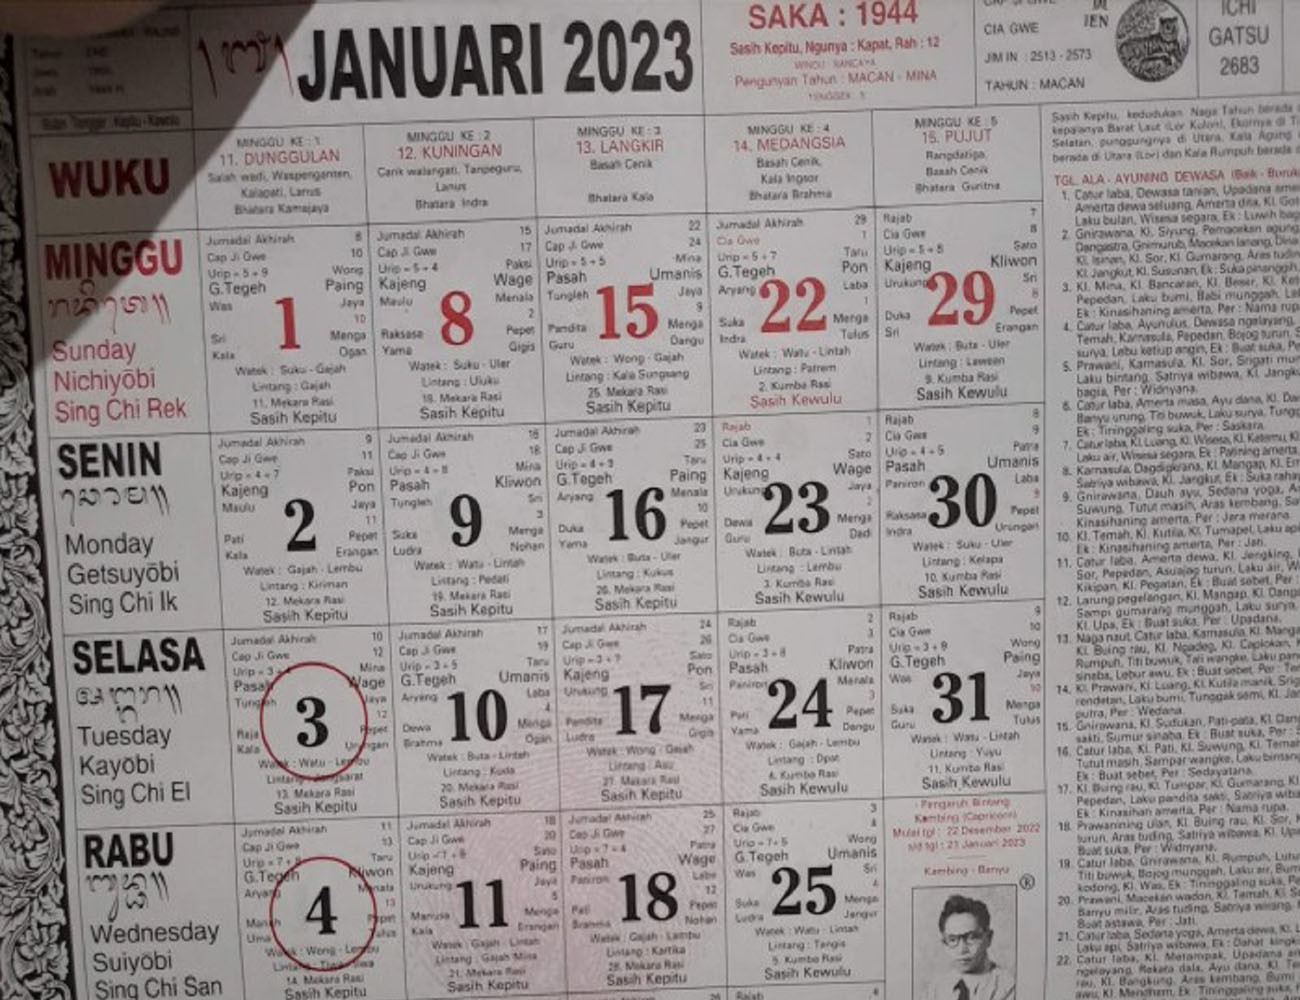 Kalender Bali Senin 30 Januari 2023: Hari Baik Membina Persahabatan & Bertanam, Kecuali Ini - JPNN.com Bali